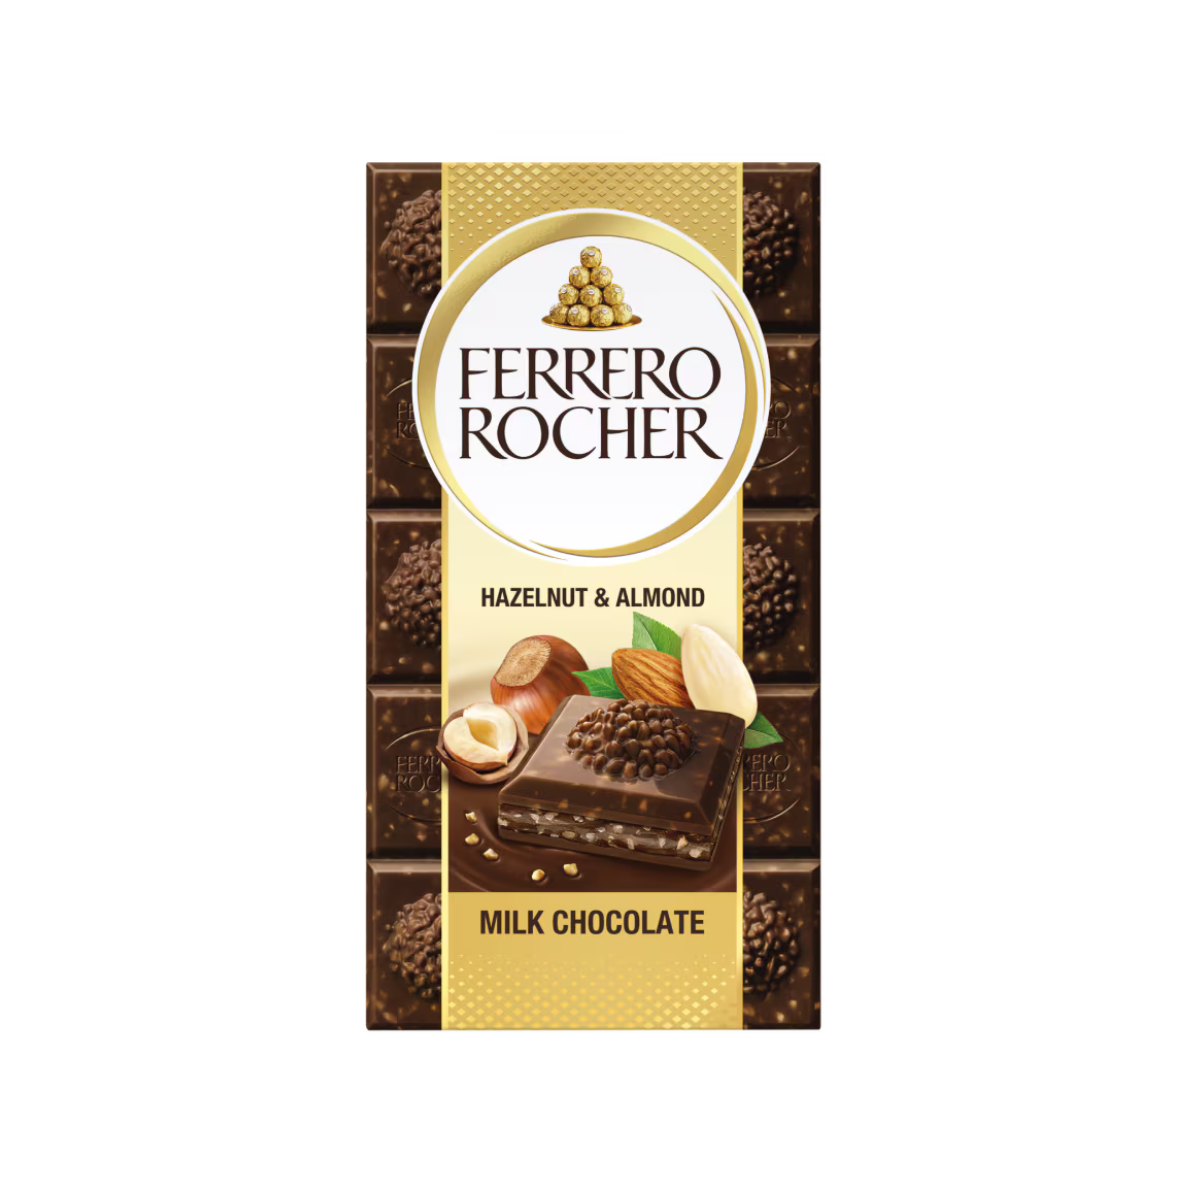 Ferrero Rocher Hazelnut & Almond Milk Chocolate 90g